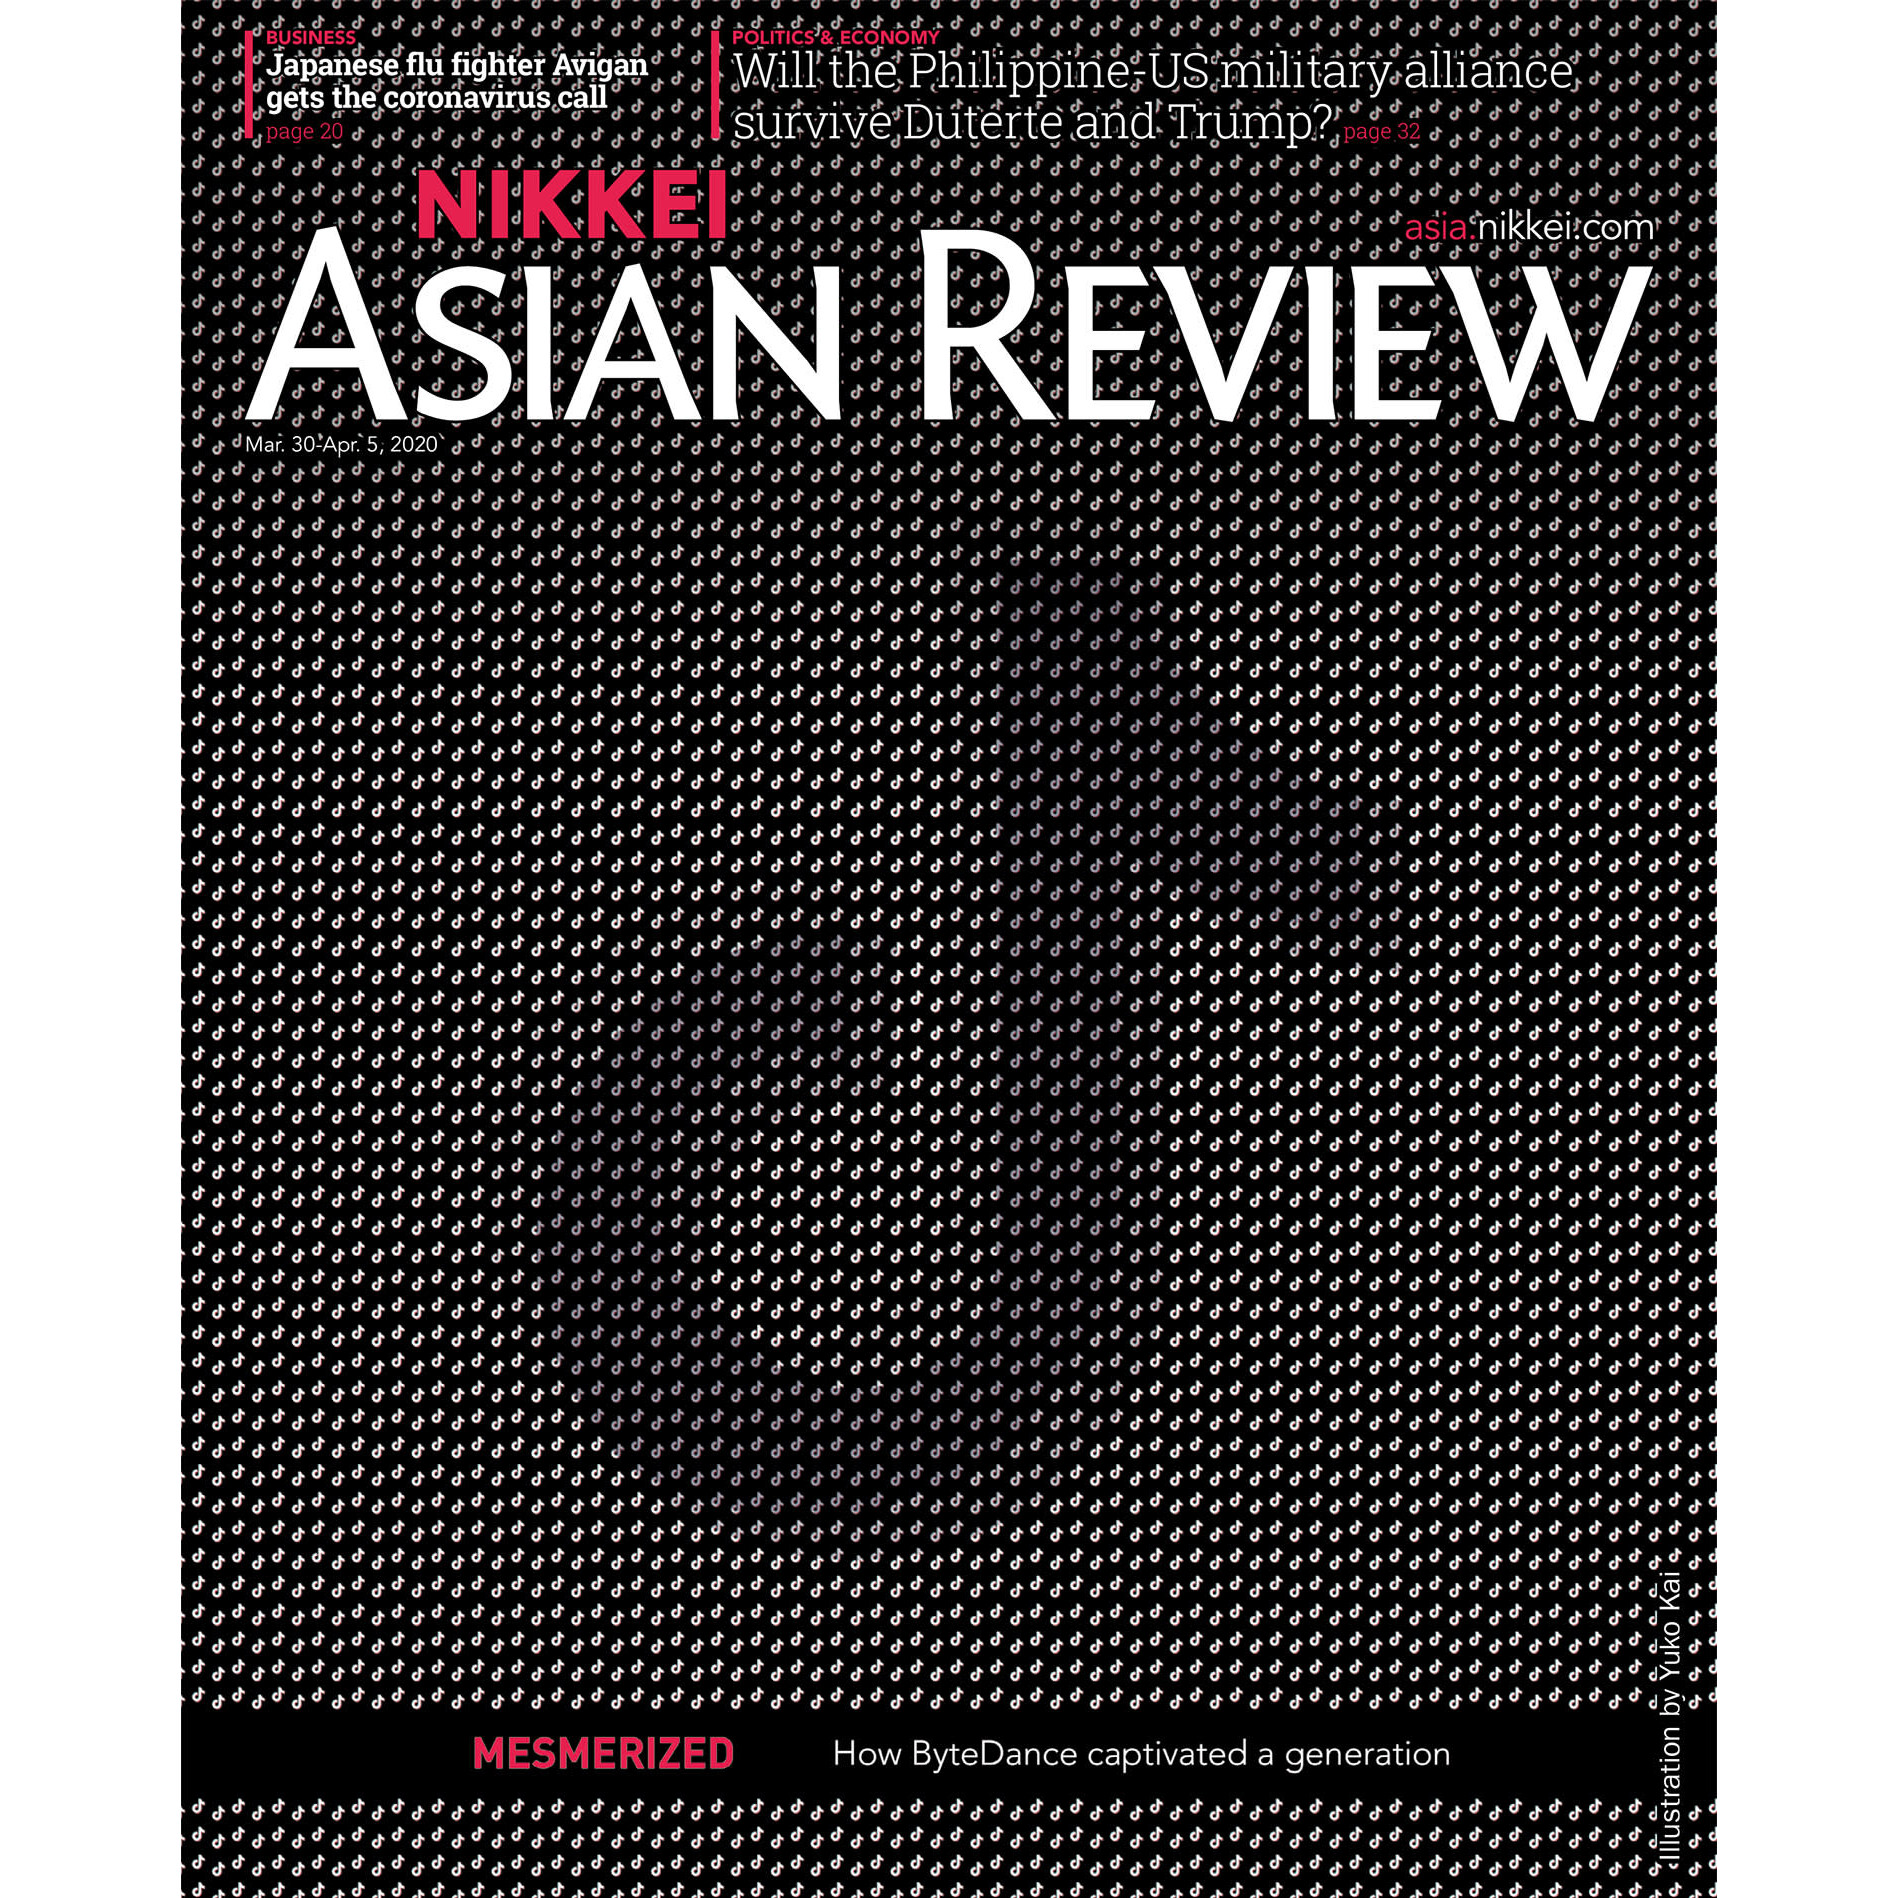 Nikkei Asian Review: TikTok - 13.20, Tạp chí kinh tế nước ngoài, 30th Mar, 2020